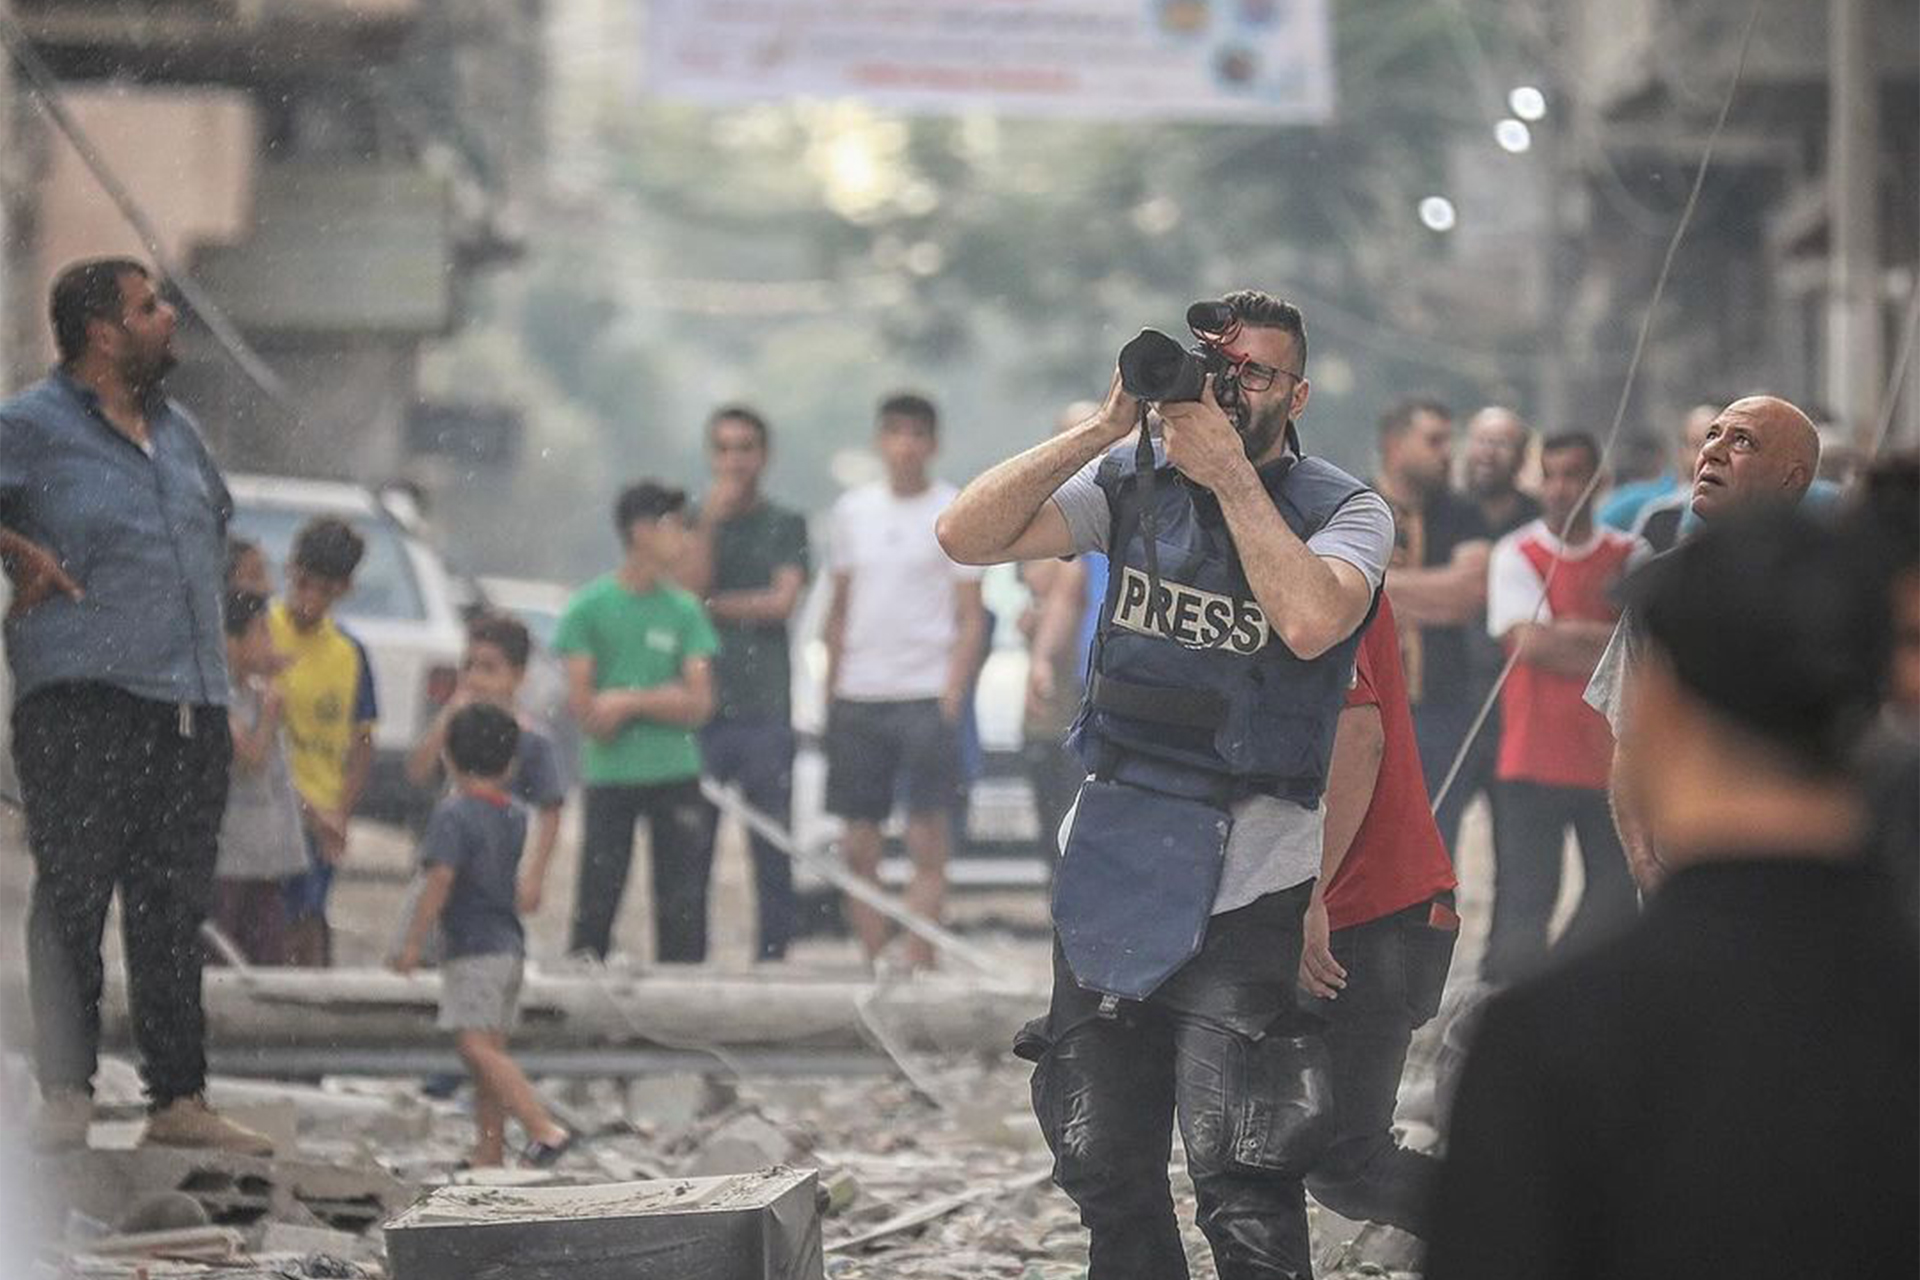 تجارب “الألم والإنجاز” لصحفيين لمعوا خلال العدوان على غزة | سياسة – البوكس نيوز